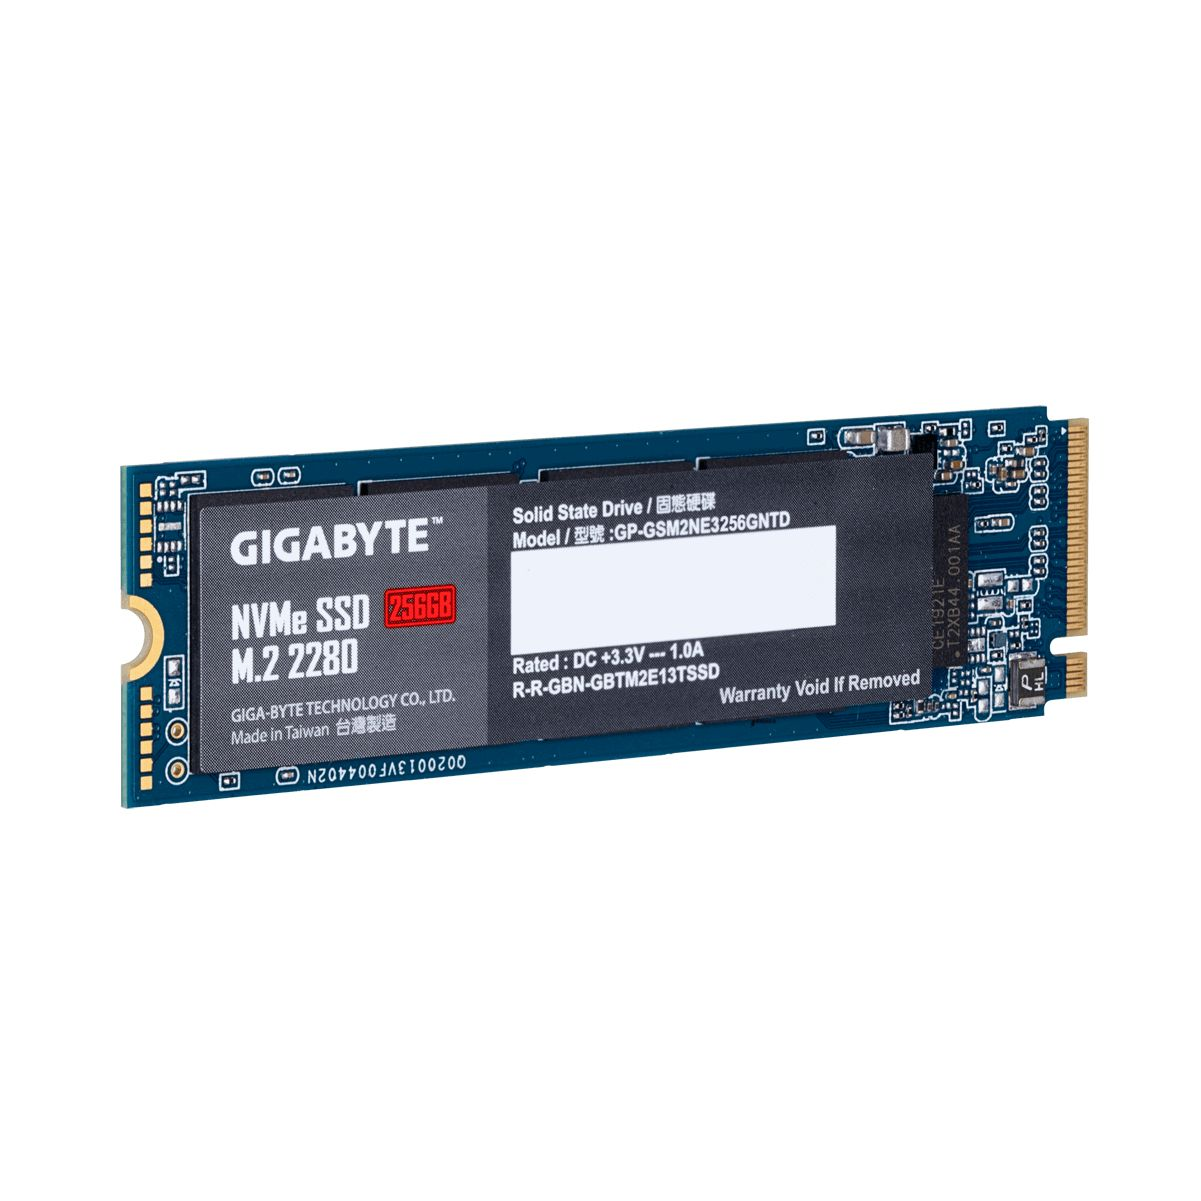 intern GB, SSD, 256 GIGABYTE GP-GSM2NE3256GNTD,